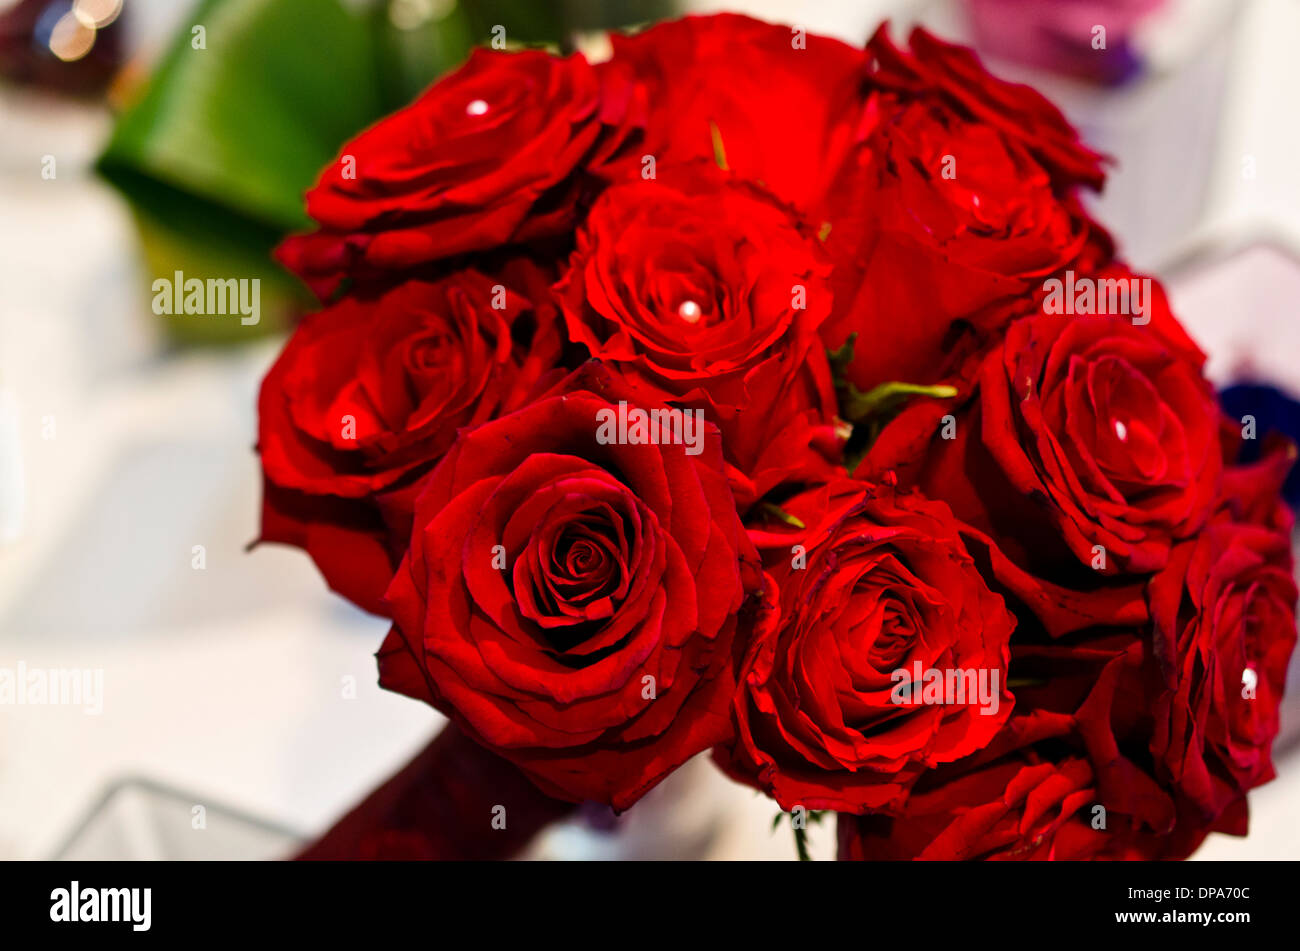 Rote Rosen und weißen Perlen Hochzeit Blumenstrauß Stockfotografie - Alamy